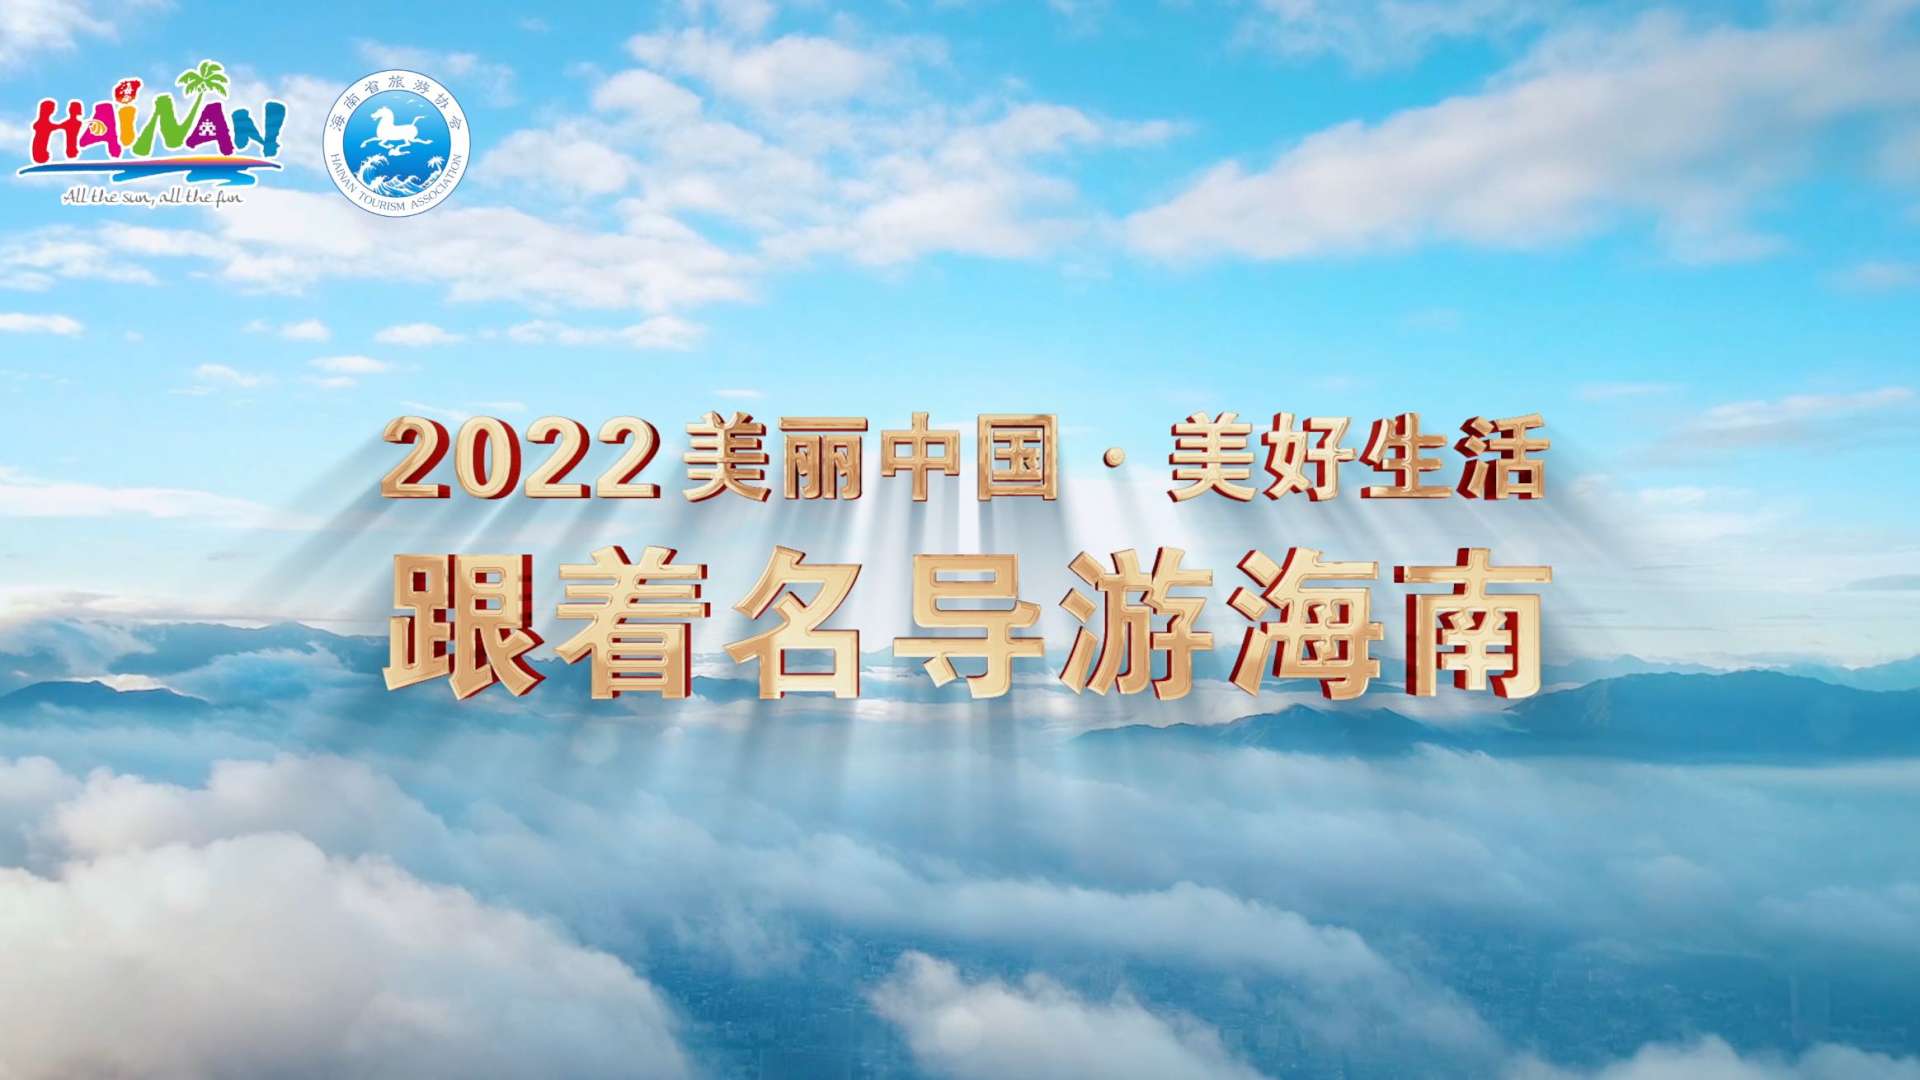 2022-跟着名导游海南4K